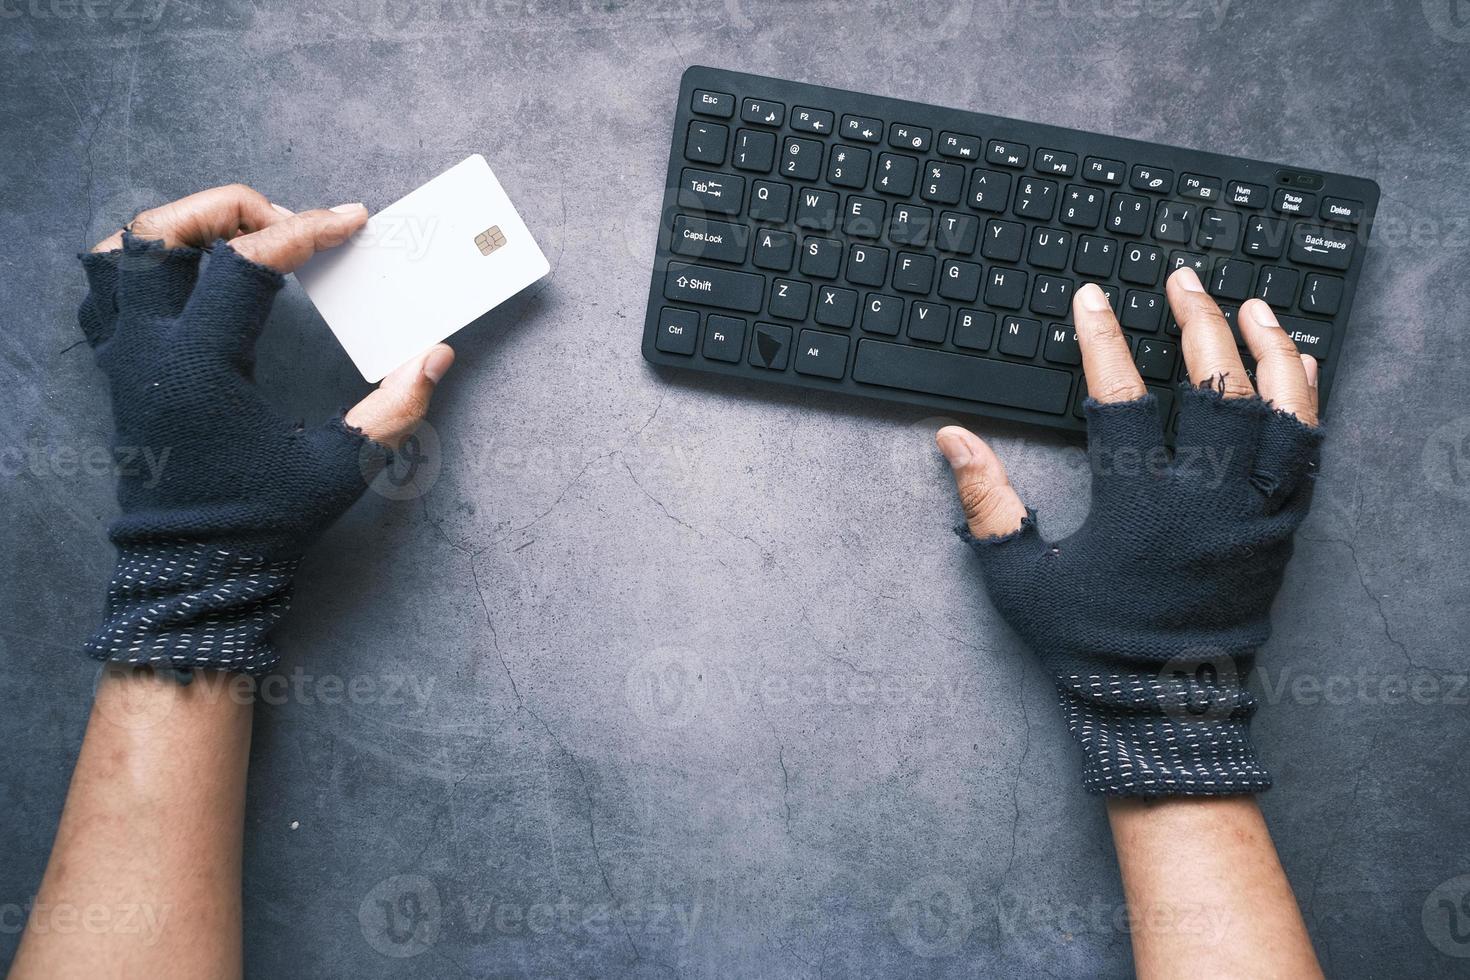 mão de hacker roubando dados de cartão de crédito foto